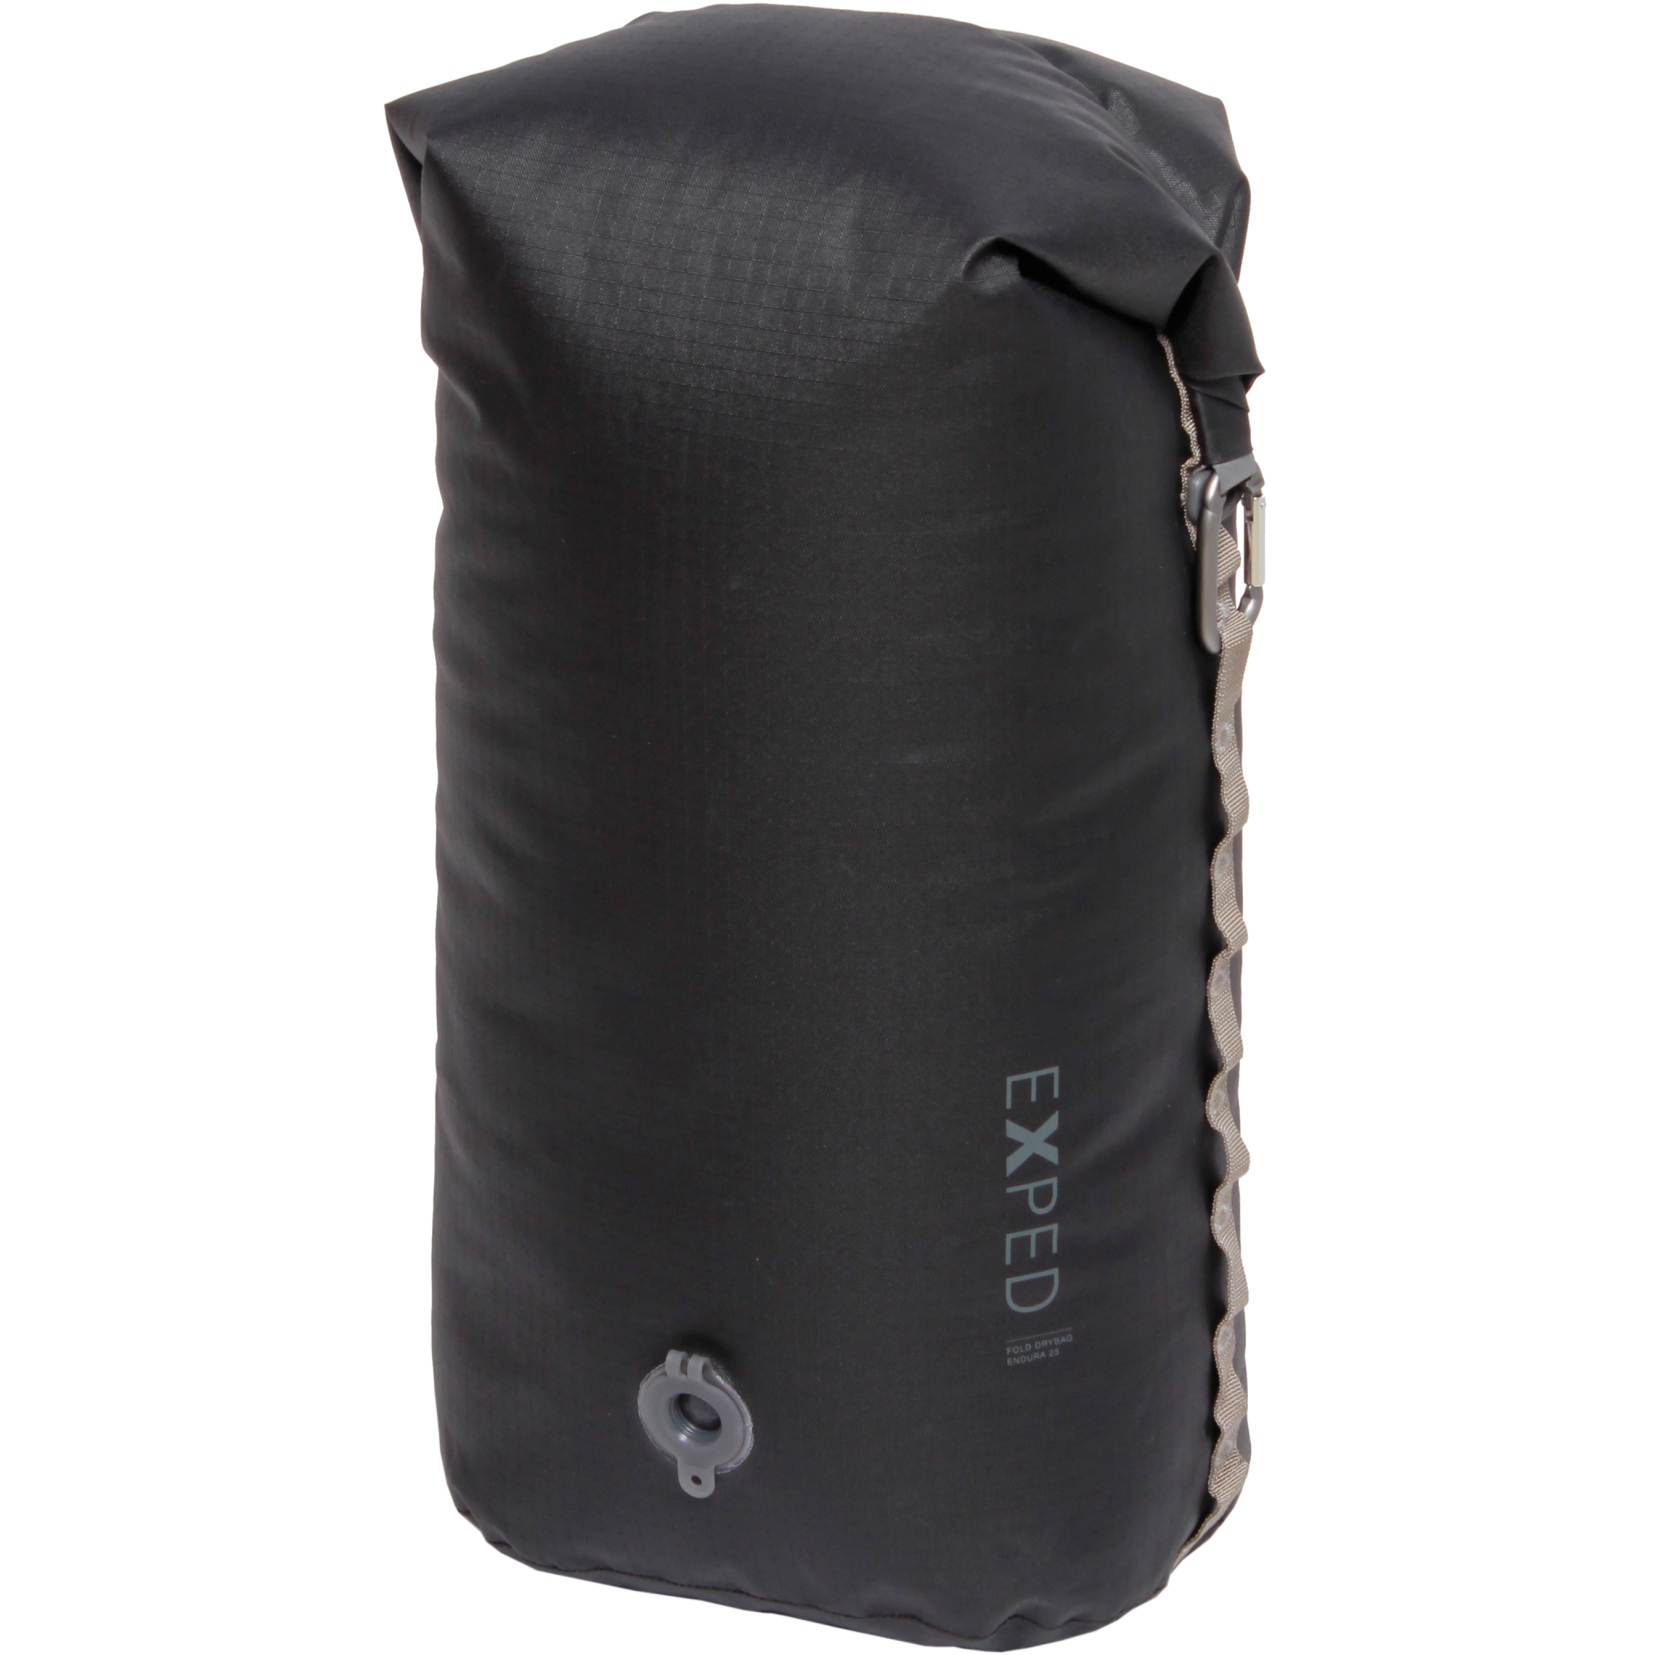 Produktbild von Exped Fold Drybag Endura Packsack - 25L - schwarz